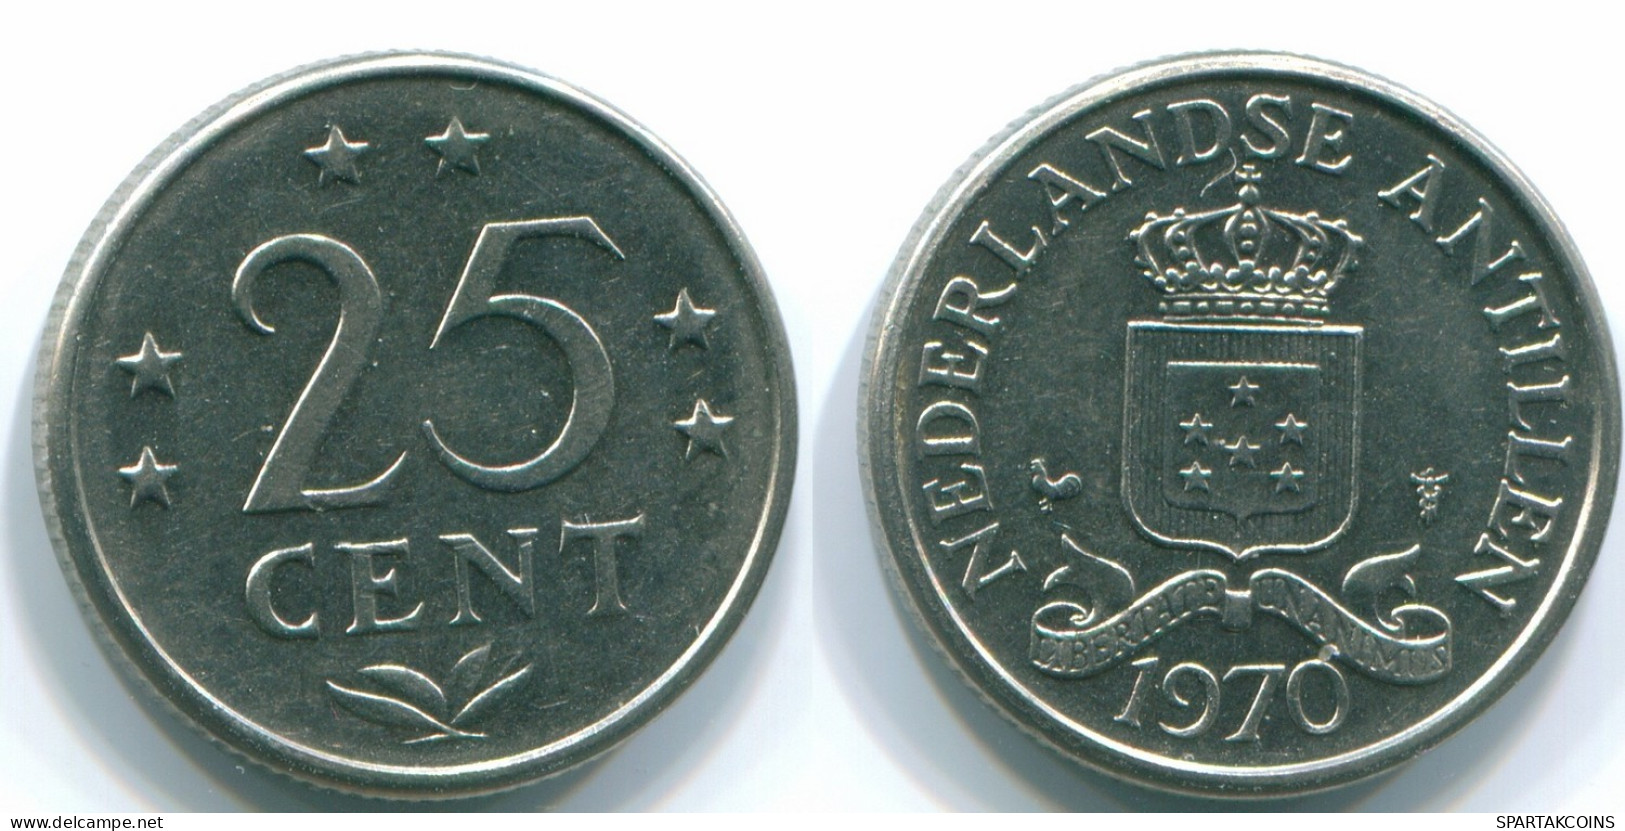 25 CENTS 1970 NIEDERLÄNDISCHE ANTILLEN Nickel Koloniale Münze #S11466.D.A - Niederländische Antillen